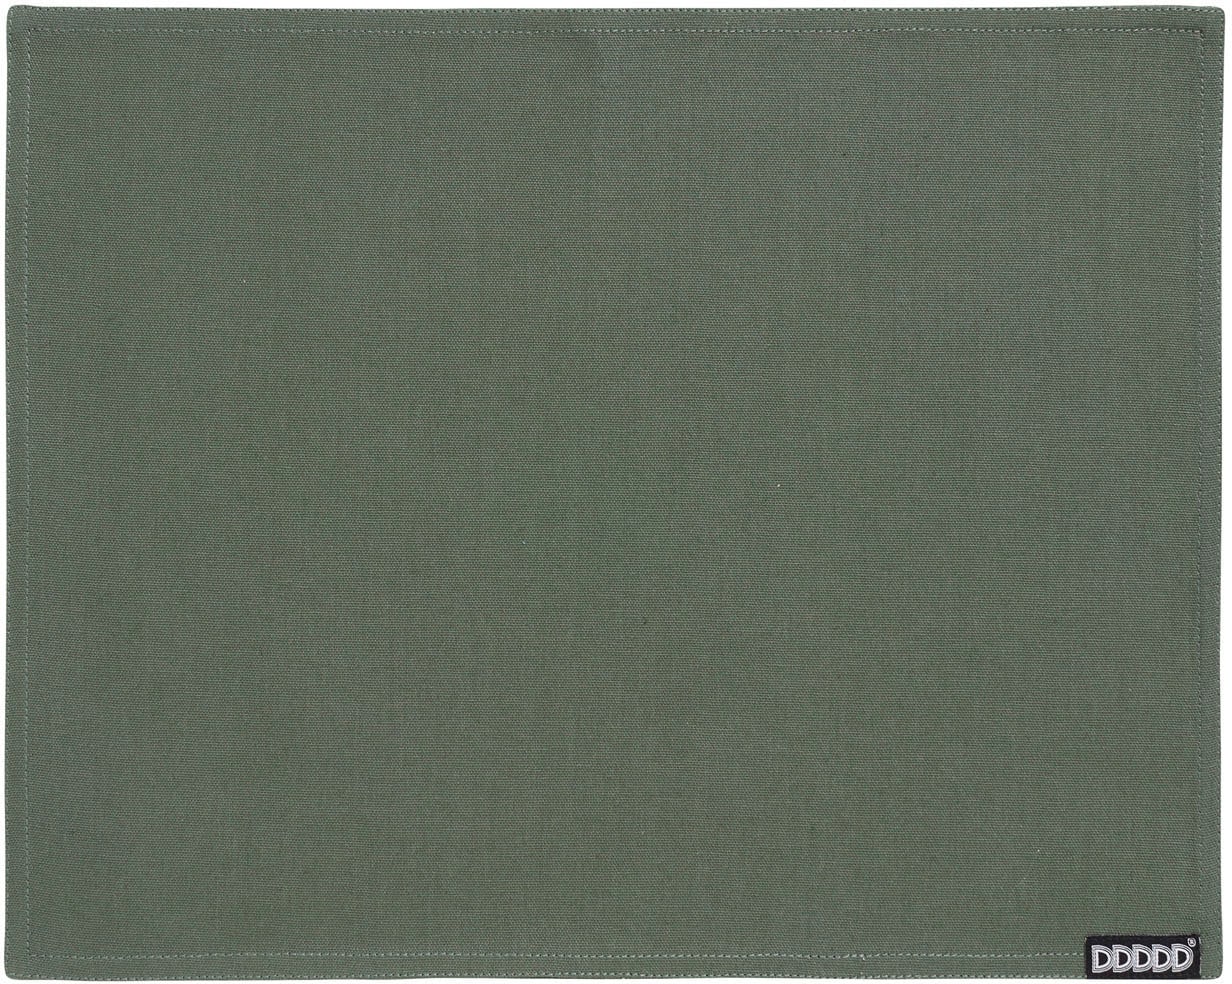 St.), 35x45 bestellen Baumwolle online »Kit«, cm, (Set, 2 DDDDD Platzdecke, Platzset